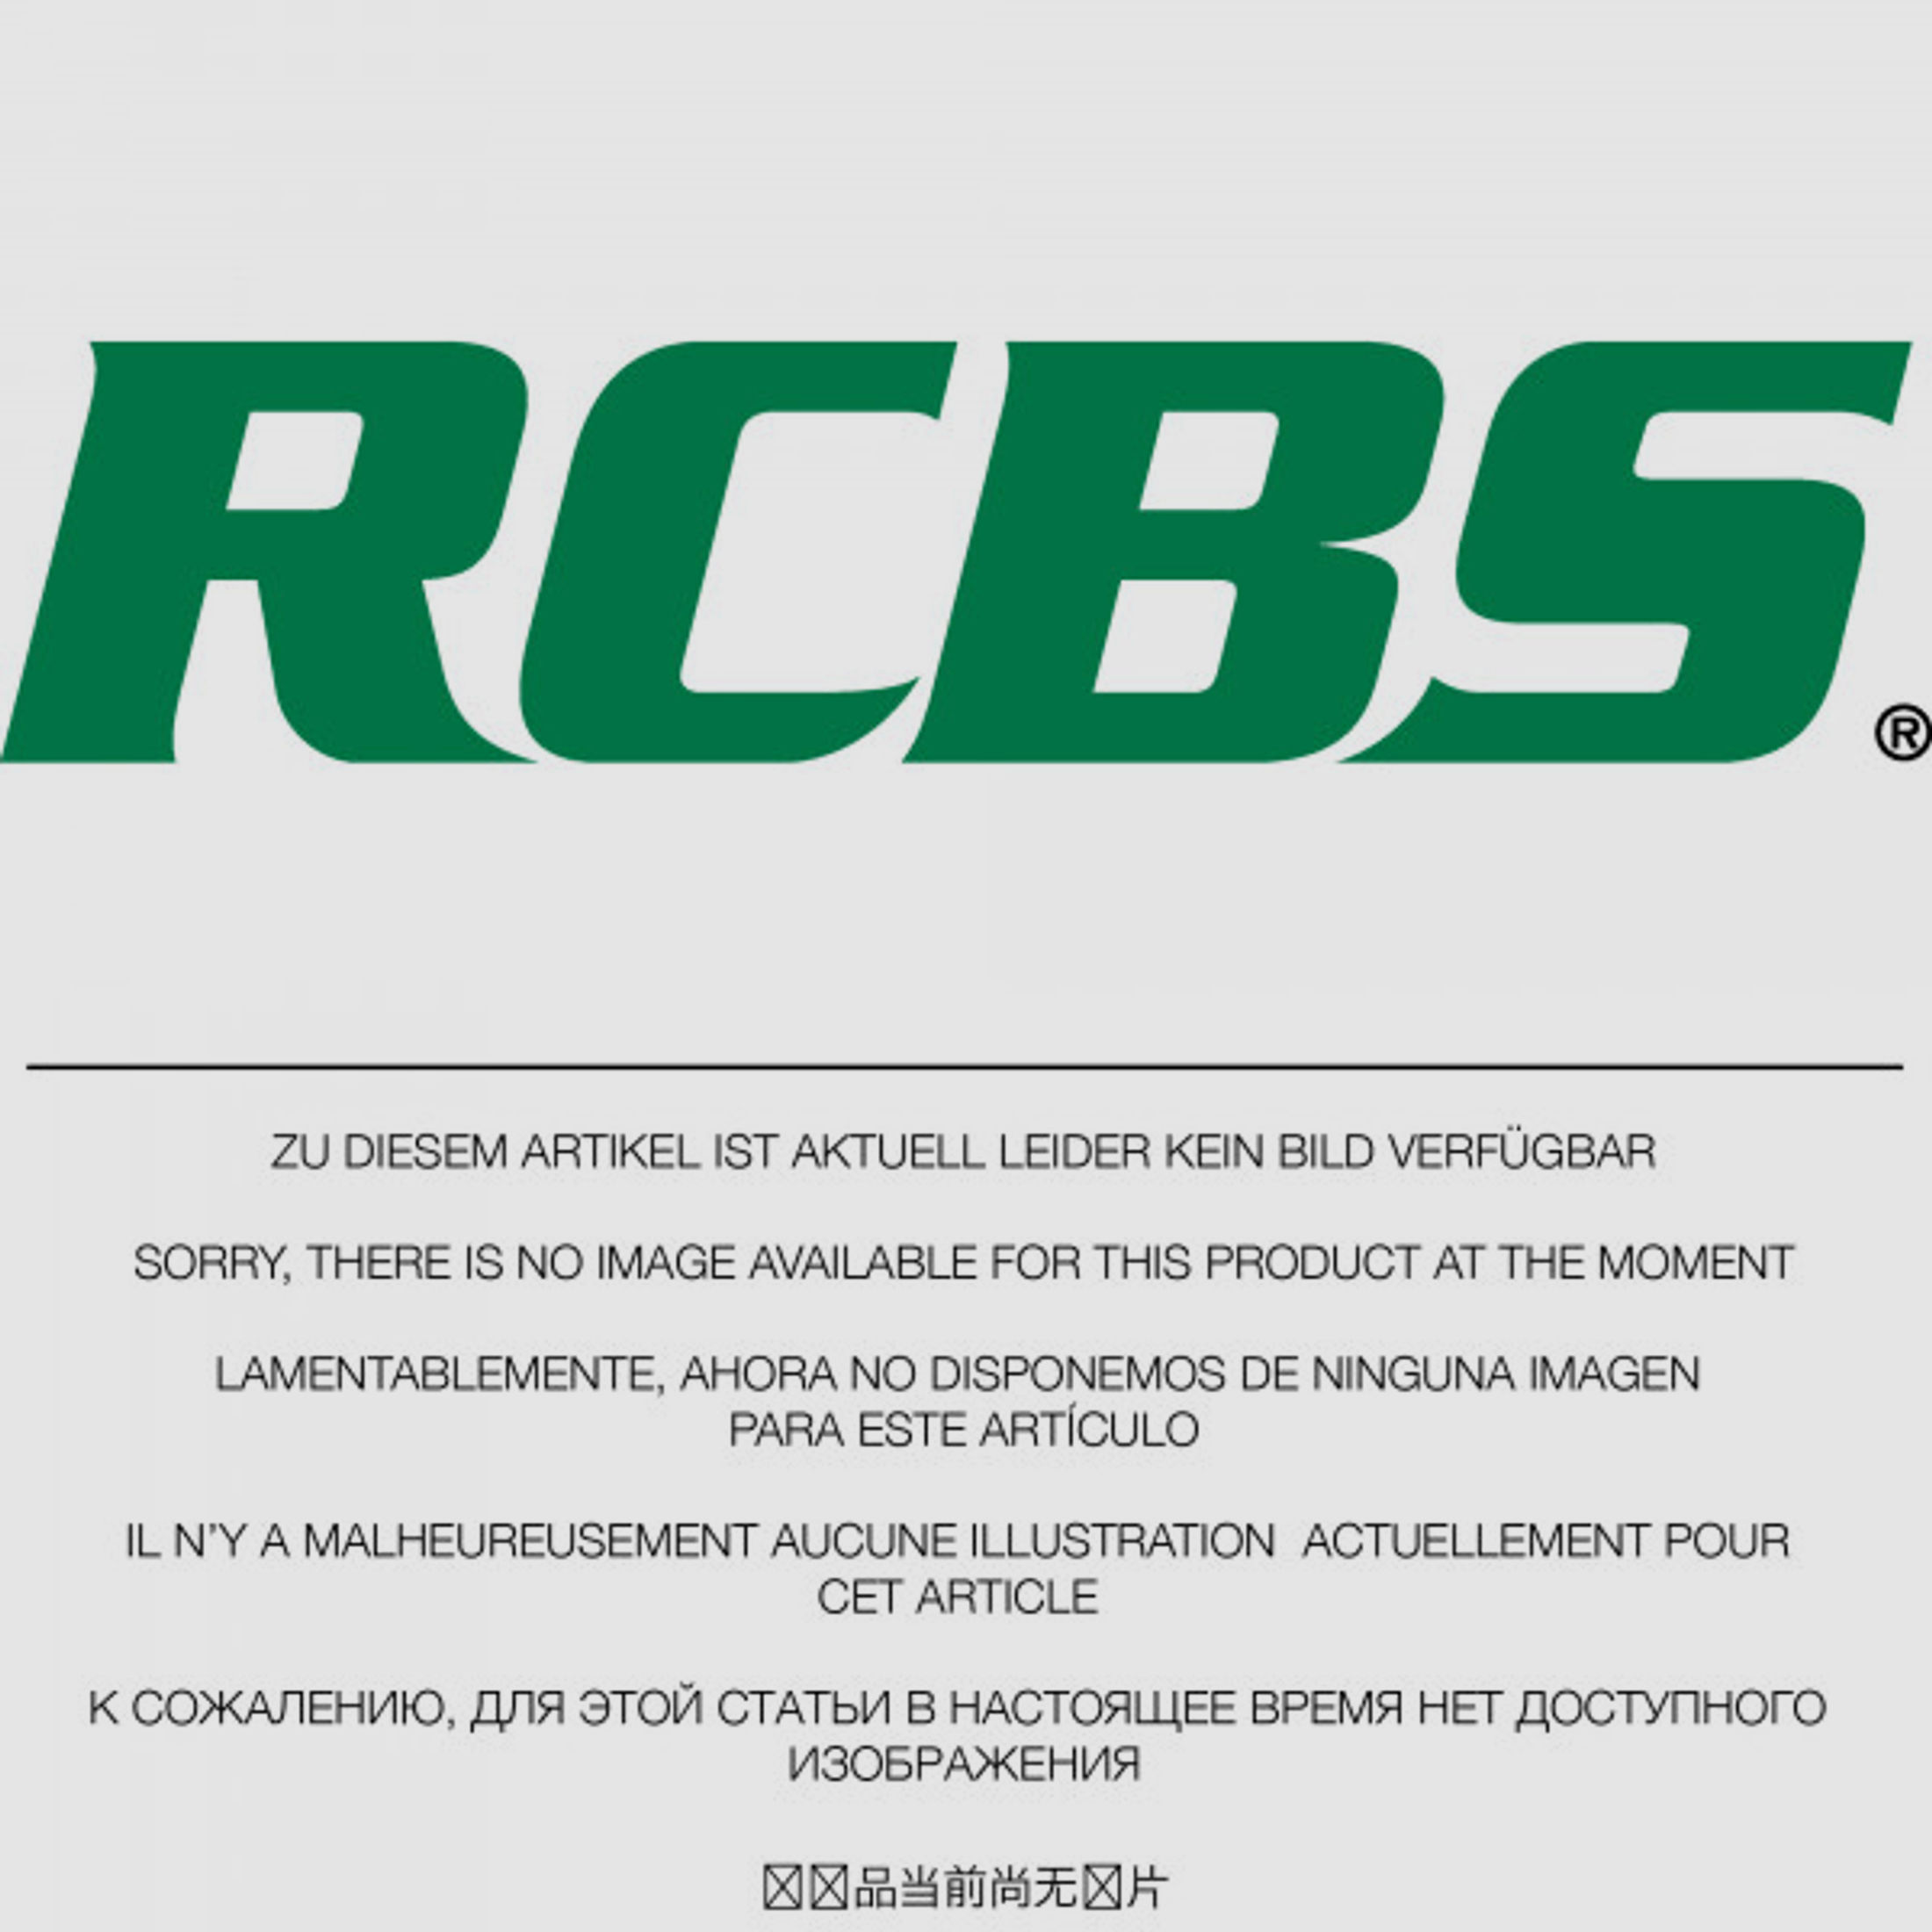 RCBS Lube-A-Matic Top Punch Geschoss Setzstempel Nr. 422 #82526